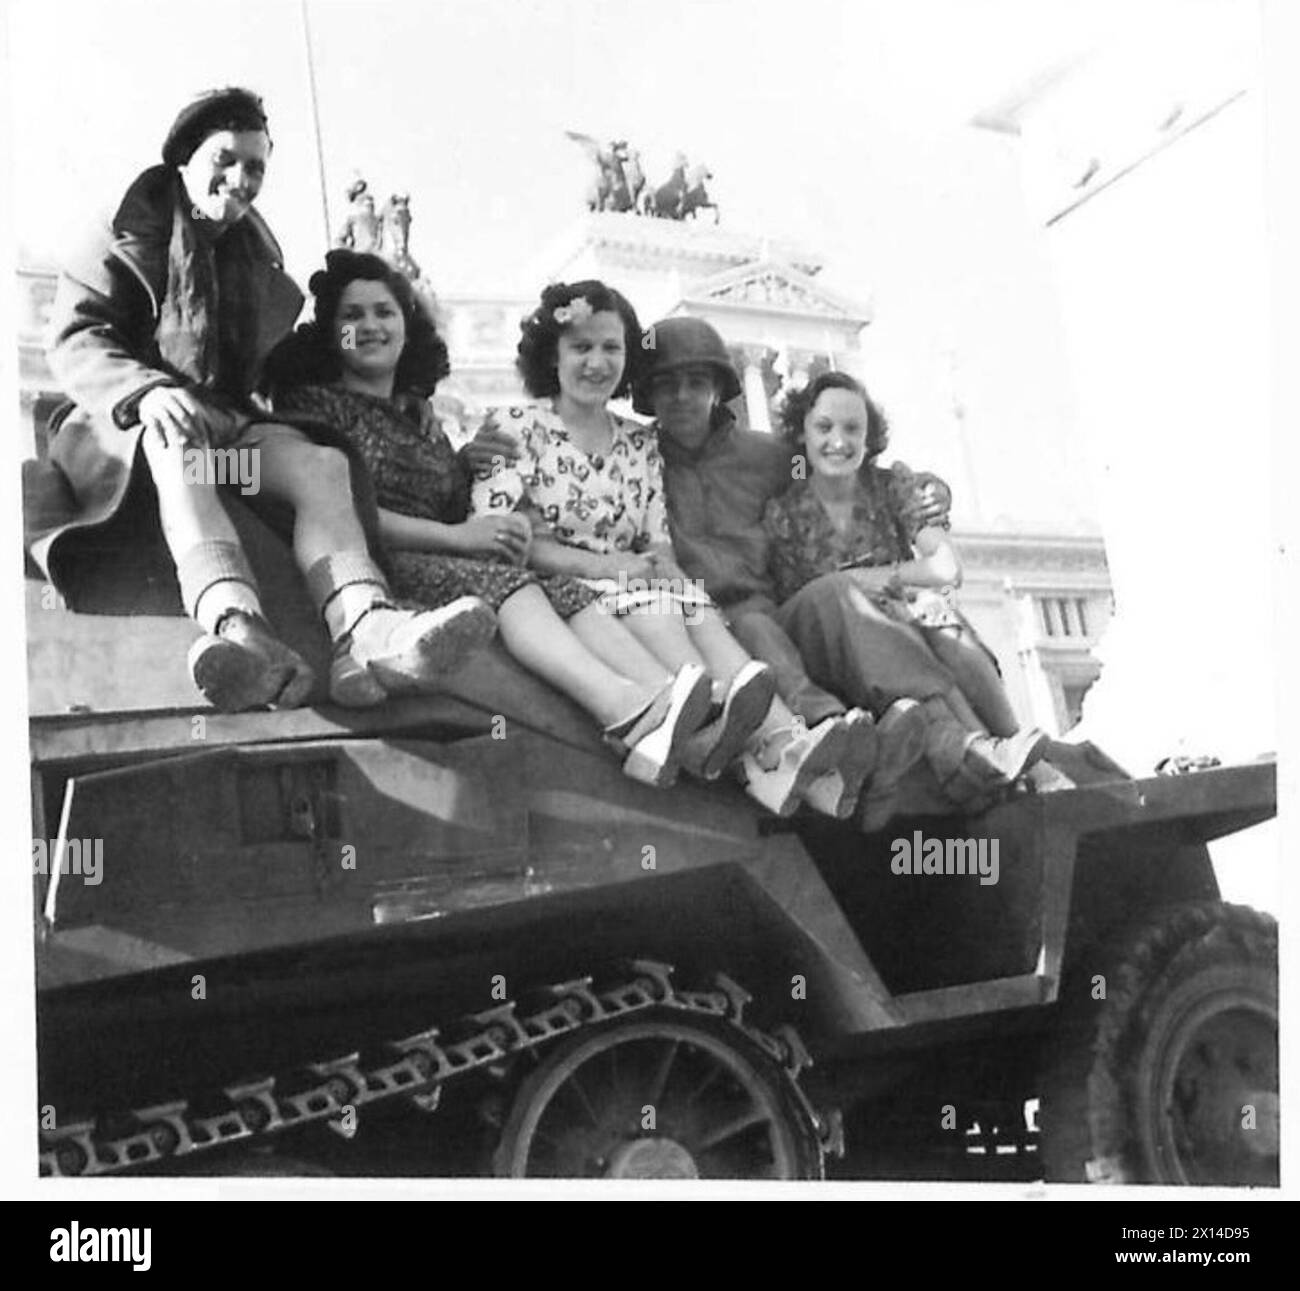 ITALIE : SCÈNES OÙ ROME SE REND À LA CINQUIÈME ARMÉE - des filles italiennes assises sur un véhicule semi-piste avec des soldats alliés de l'armée britannique Banque D'Images